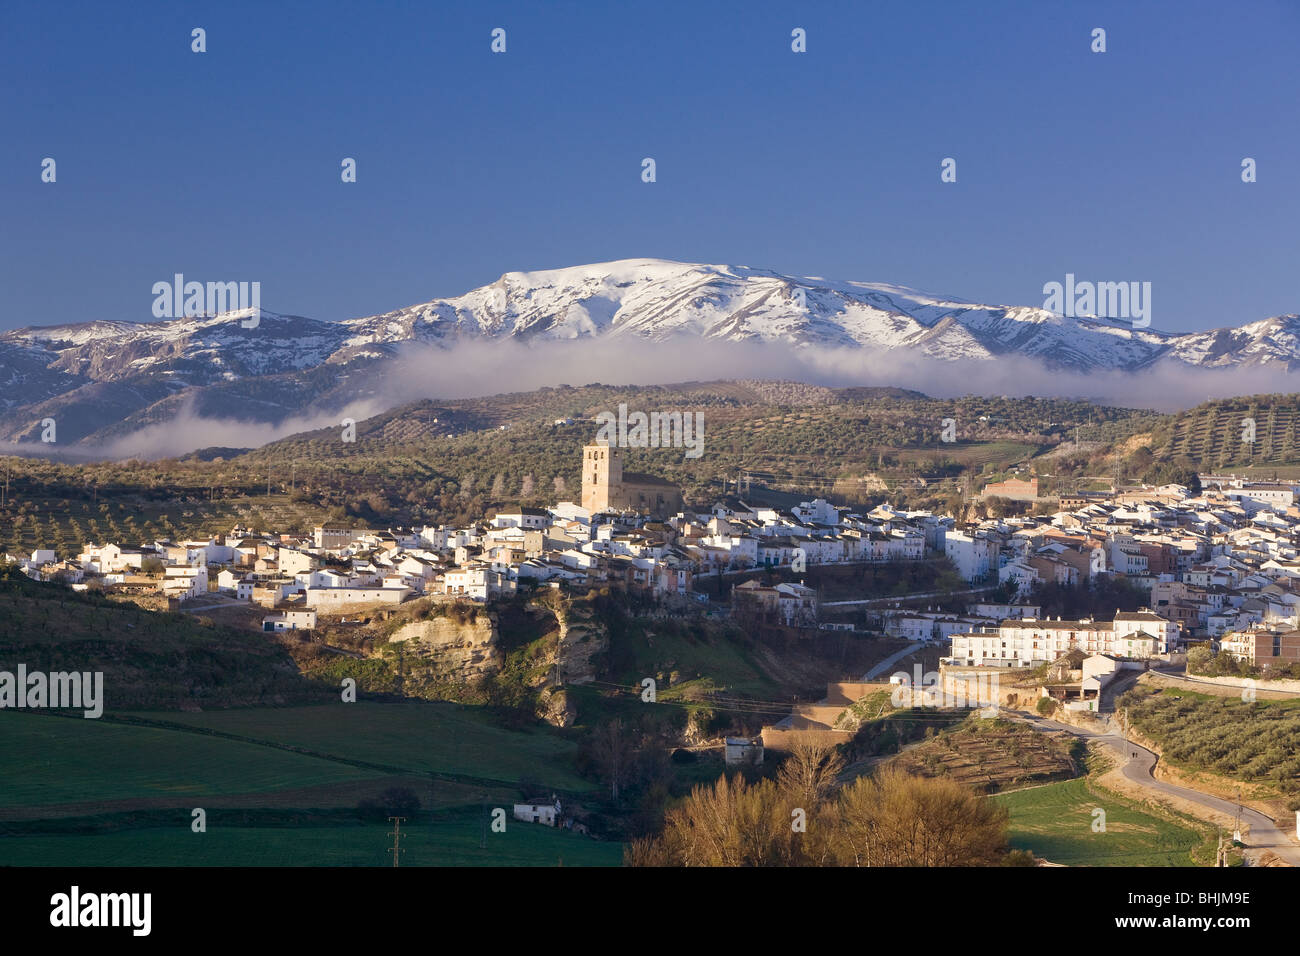 Alhama de Granada avec ses montagnes couvertes de neige dans la distance, Granada, Espagne Banque D'Images